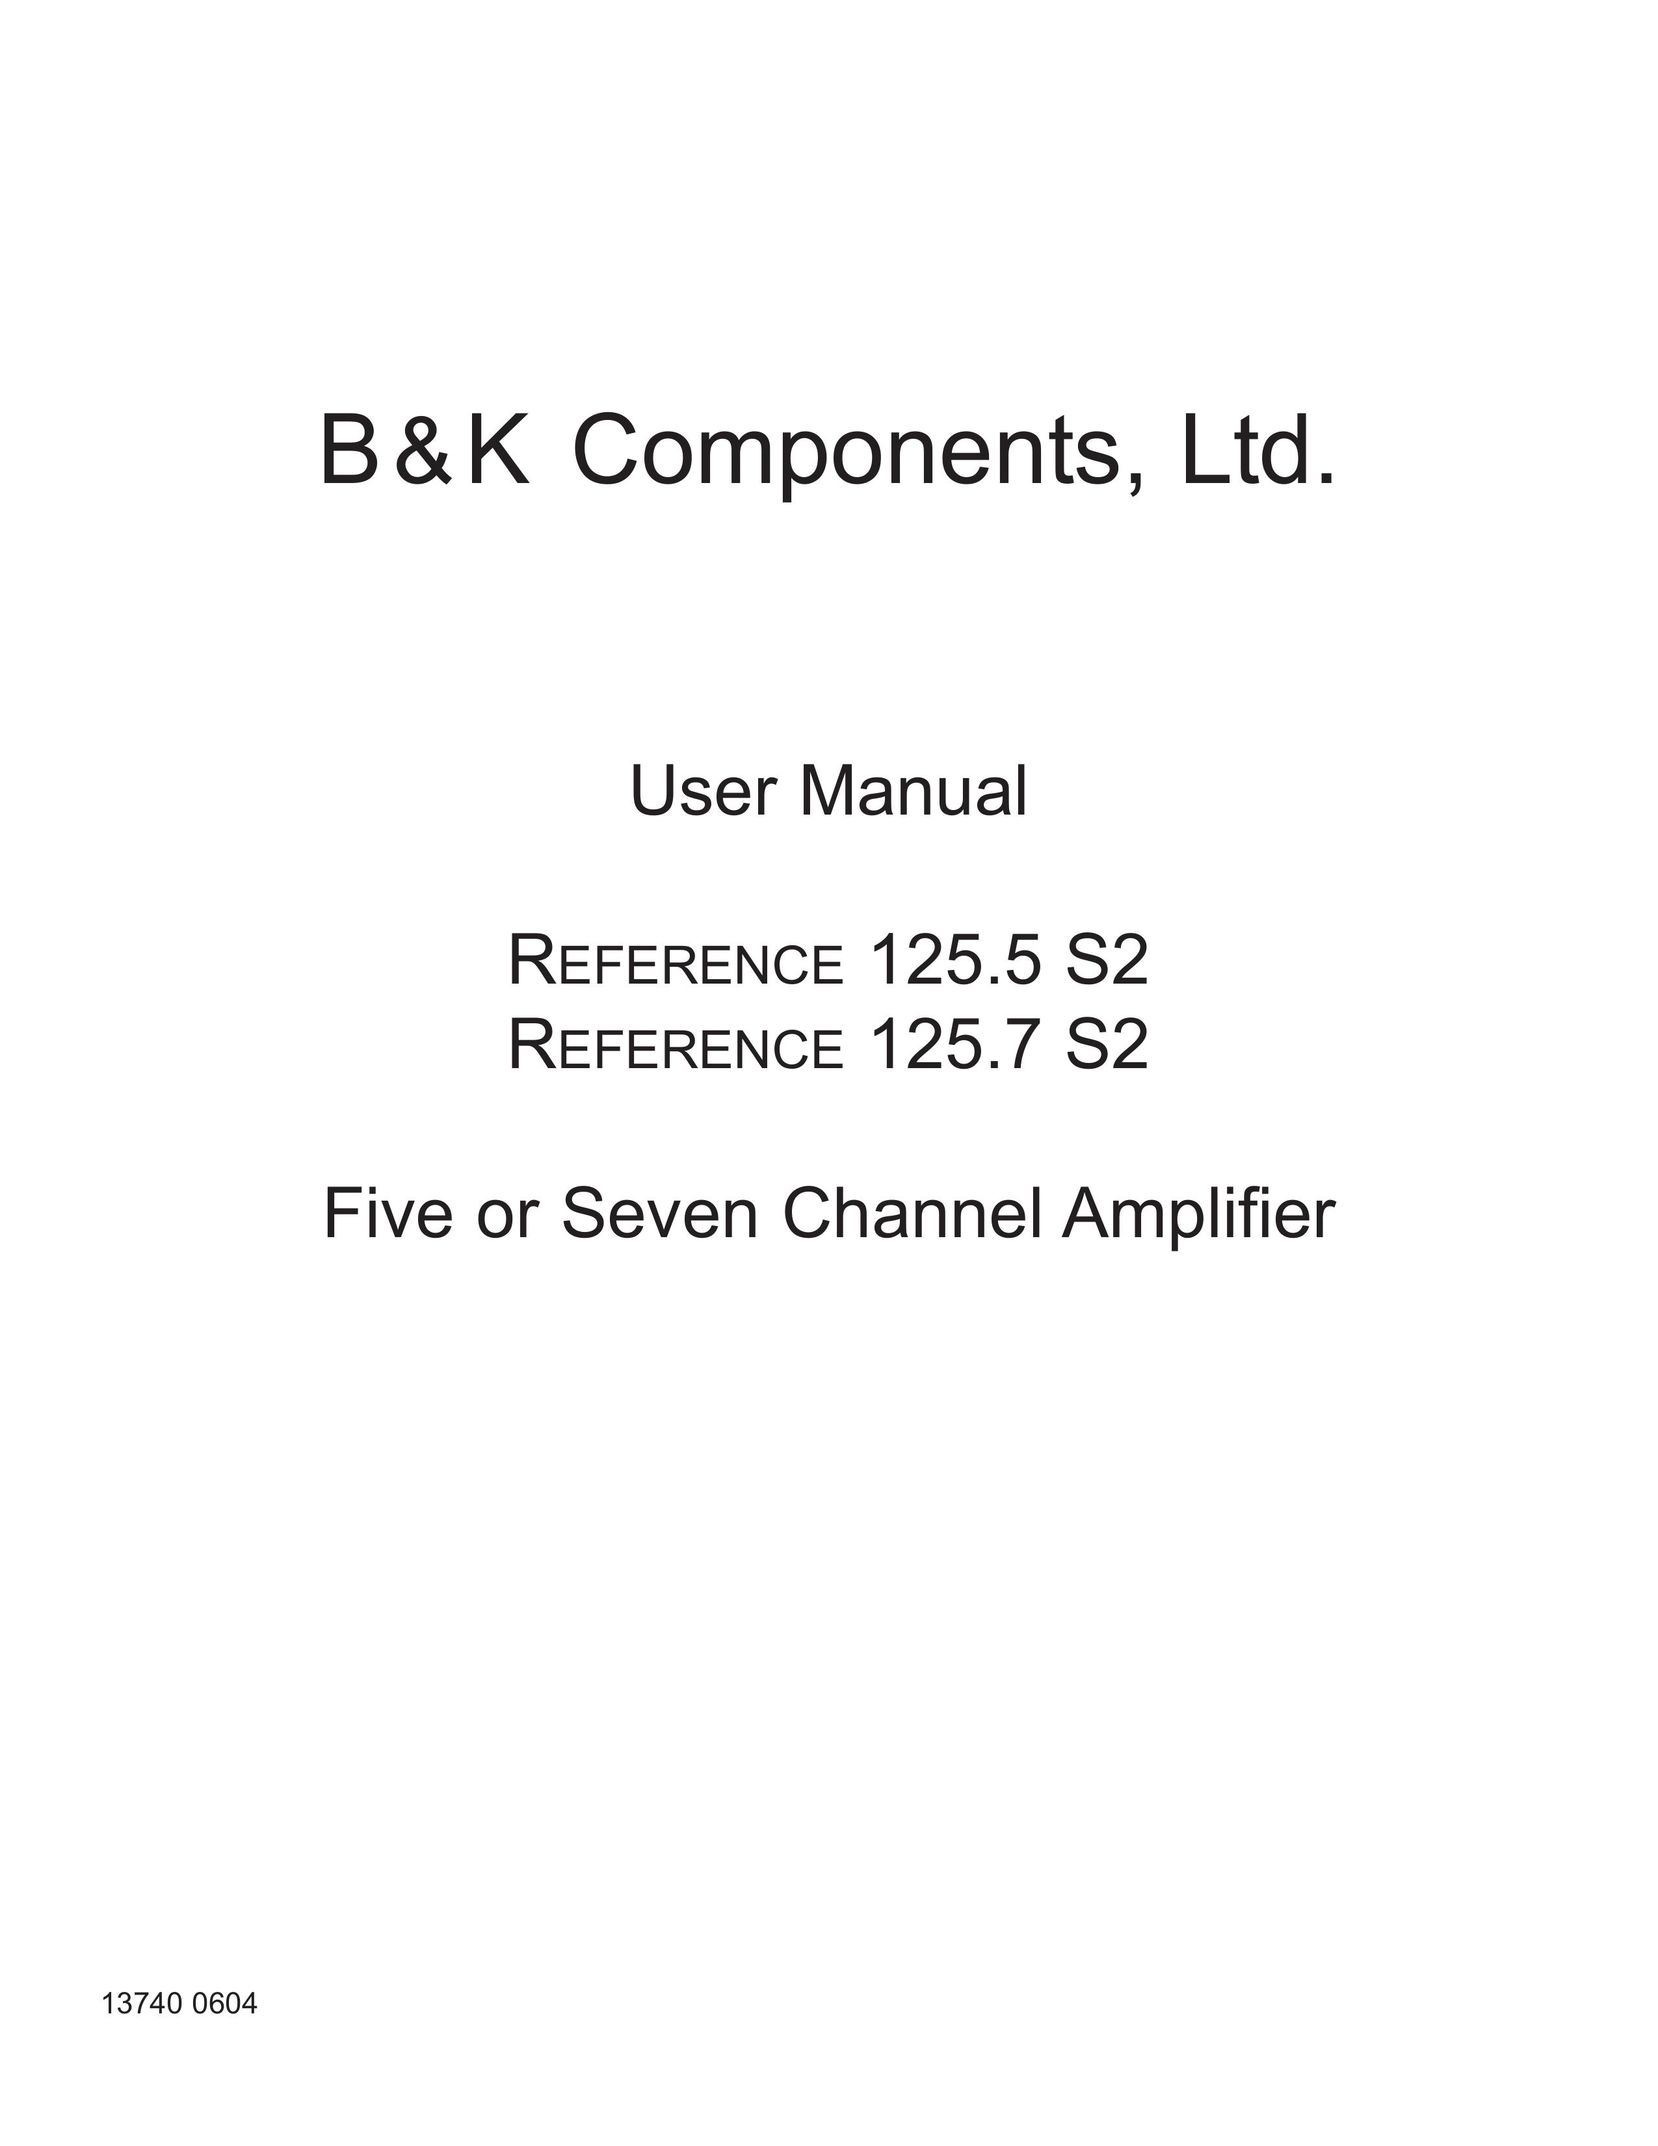 B&K 125.7 S2 Stereo Amplifier User Manual